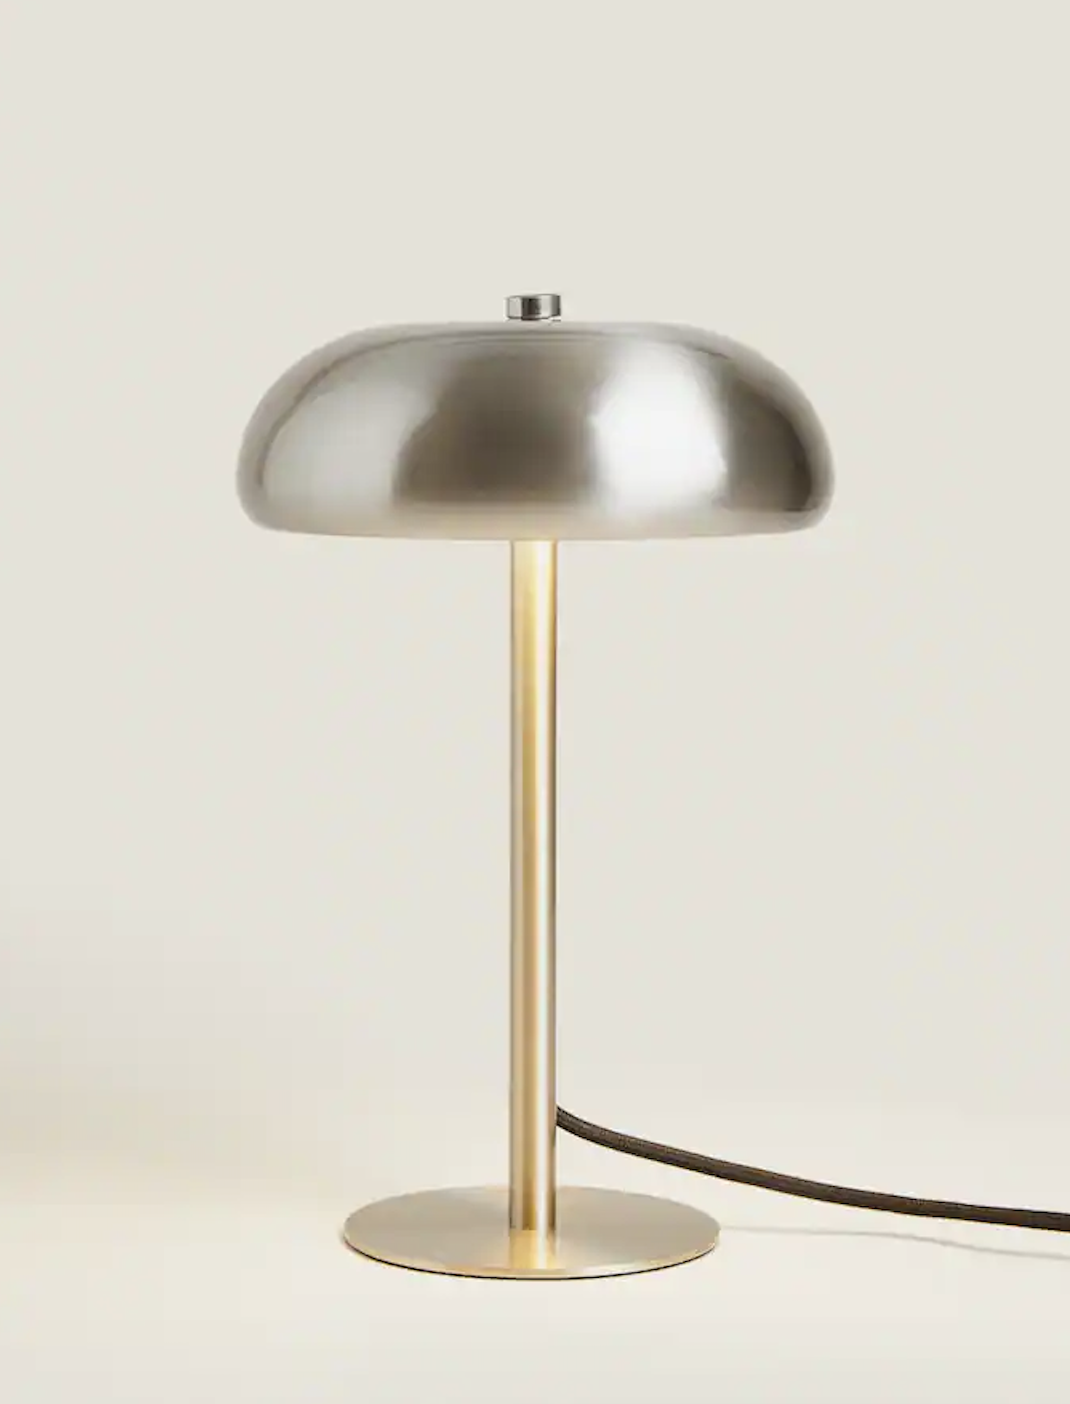 Lámpara monocolor de Zara Home, el diseño práctico y de estilo danés que conquista a todos.